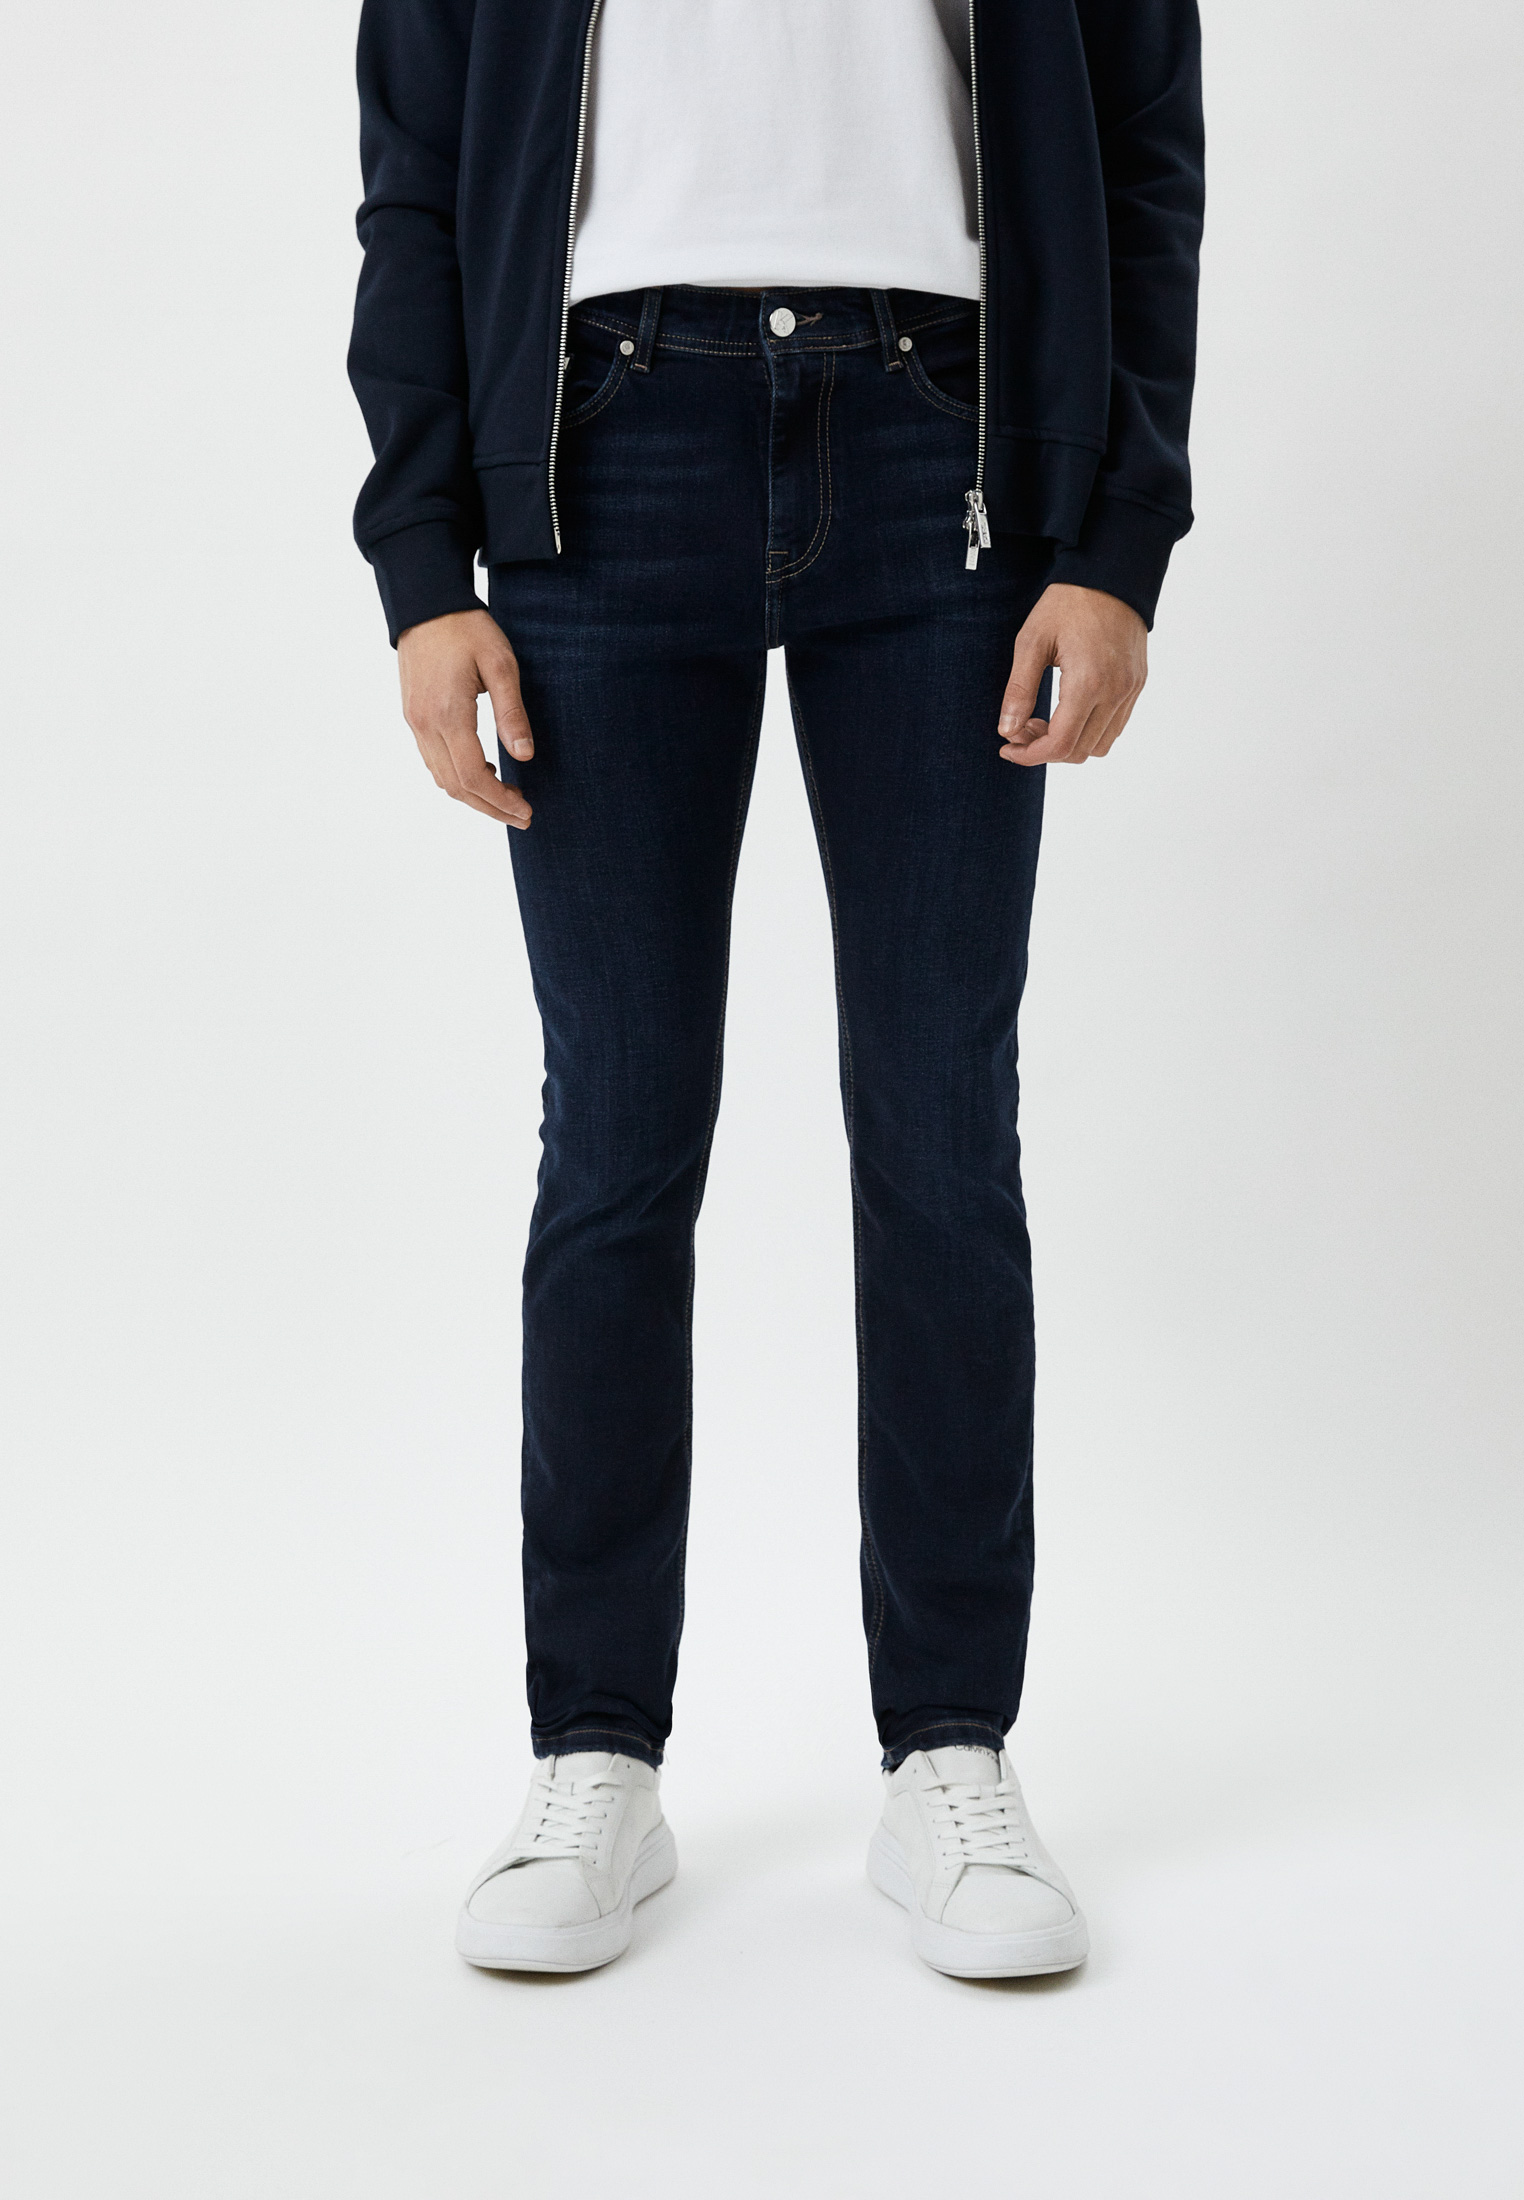 Мужские зауженные джинсы Karl Lagerfeld (Карл Лагерфельд) 265840-500830: изображение 1